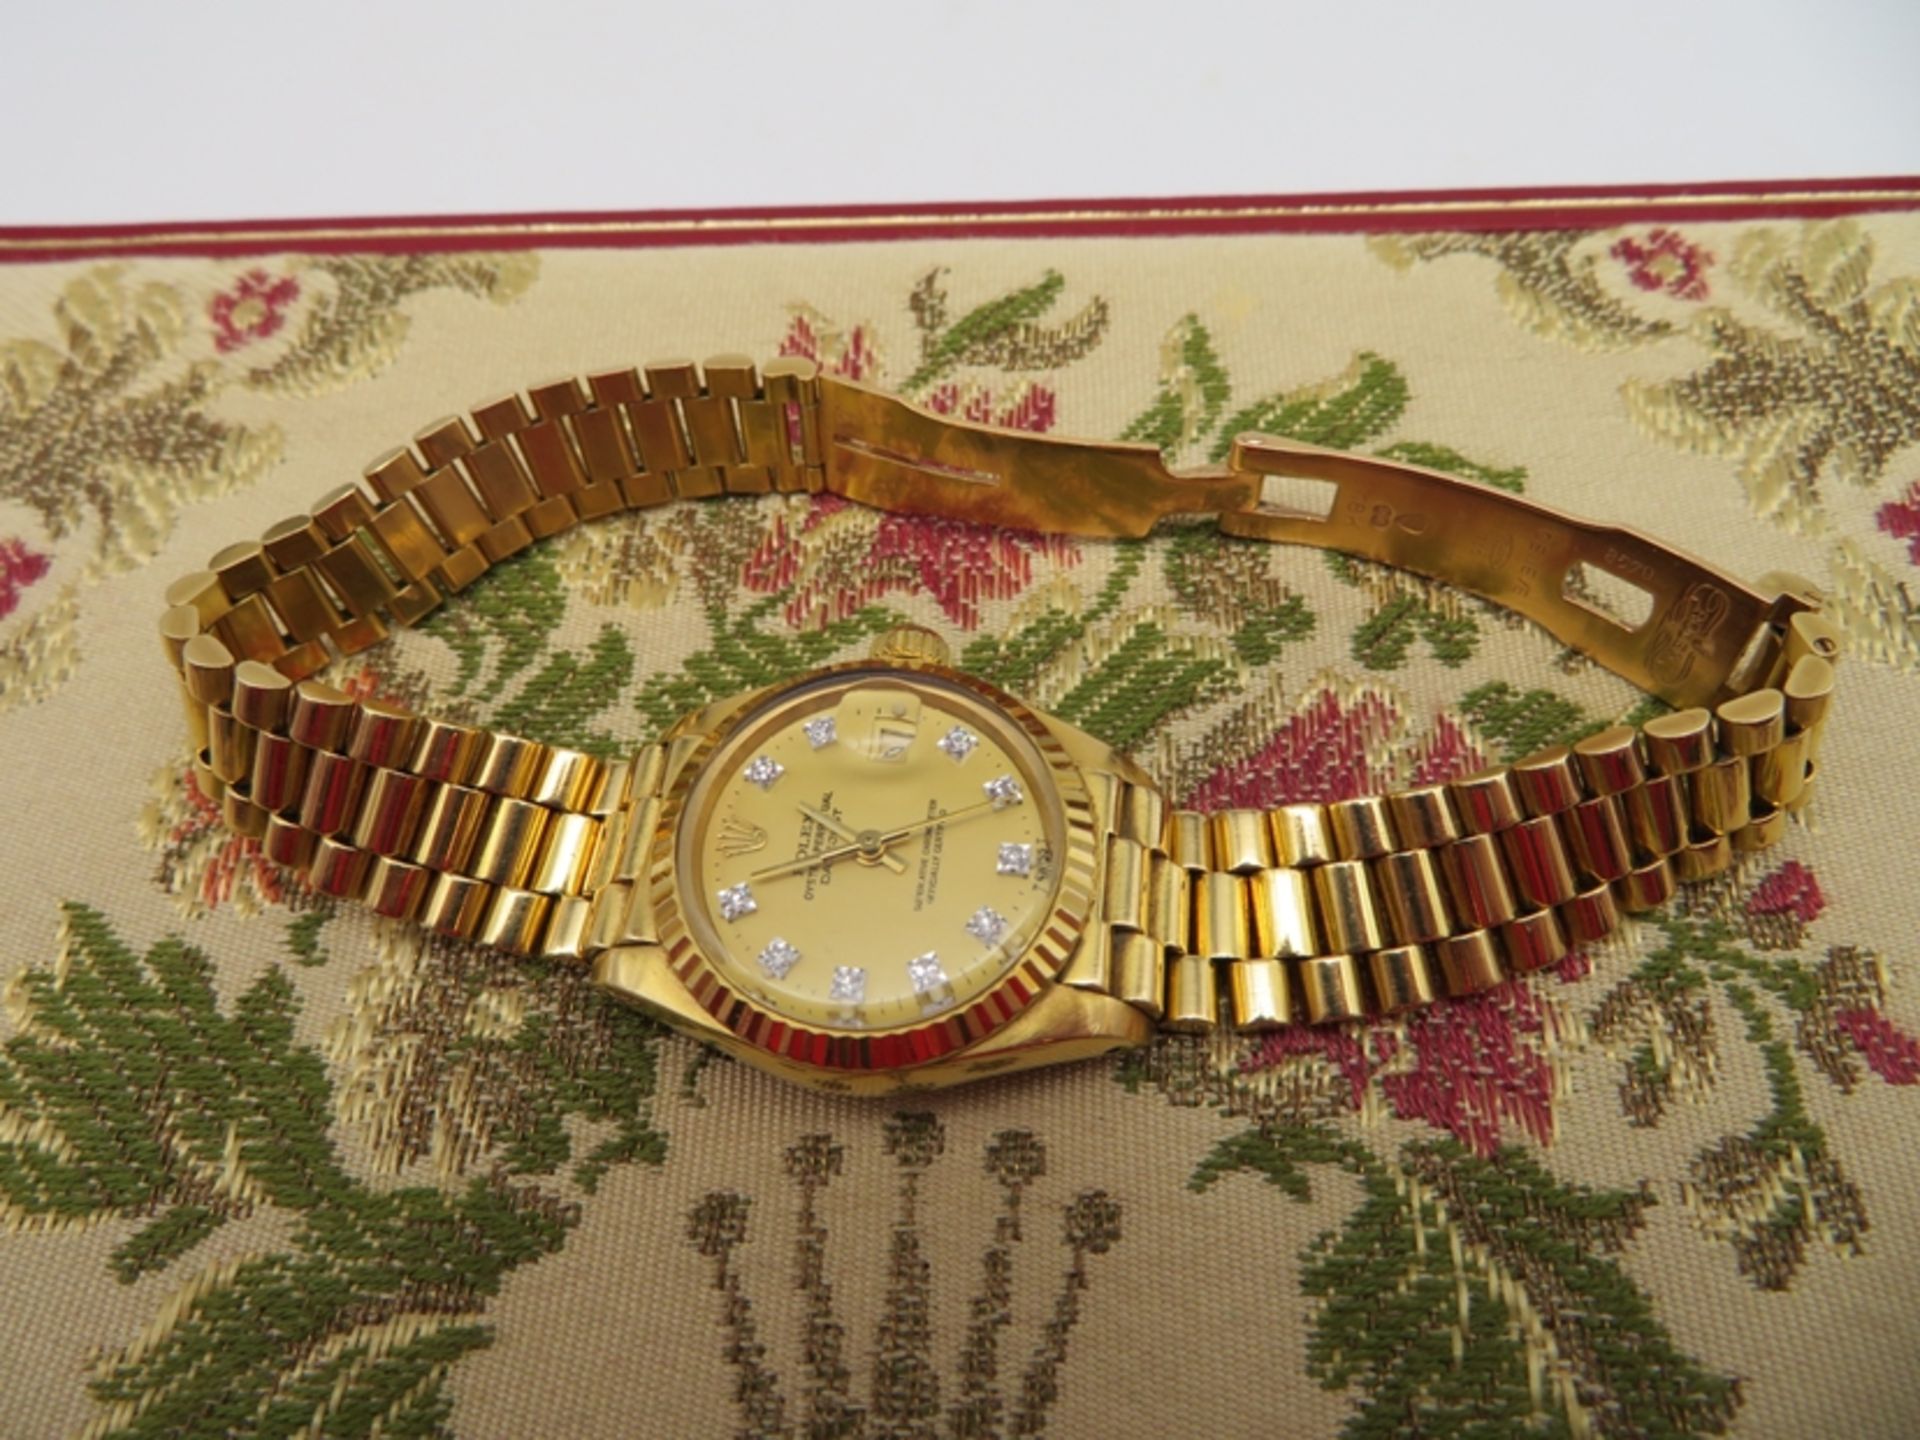 DAU, Rolex Datejust, BJ 30.03.1983, President-Armband mit verdeckter Goldschließe,  intakt, Zifferb - Bild 6 aus 7